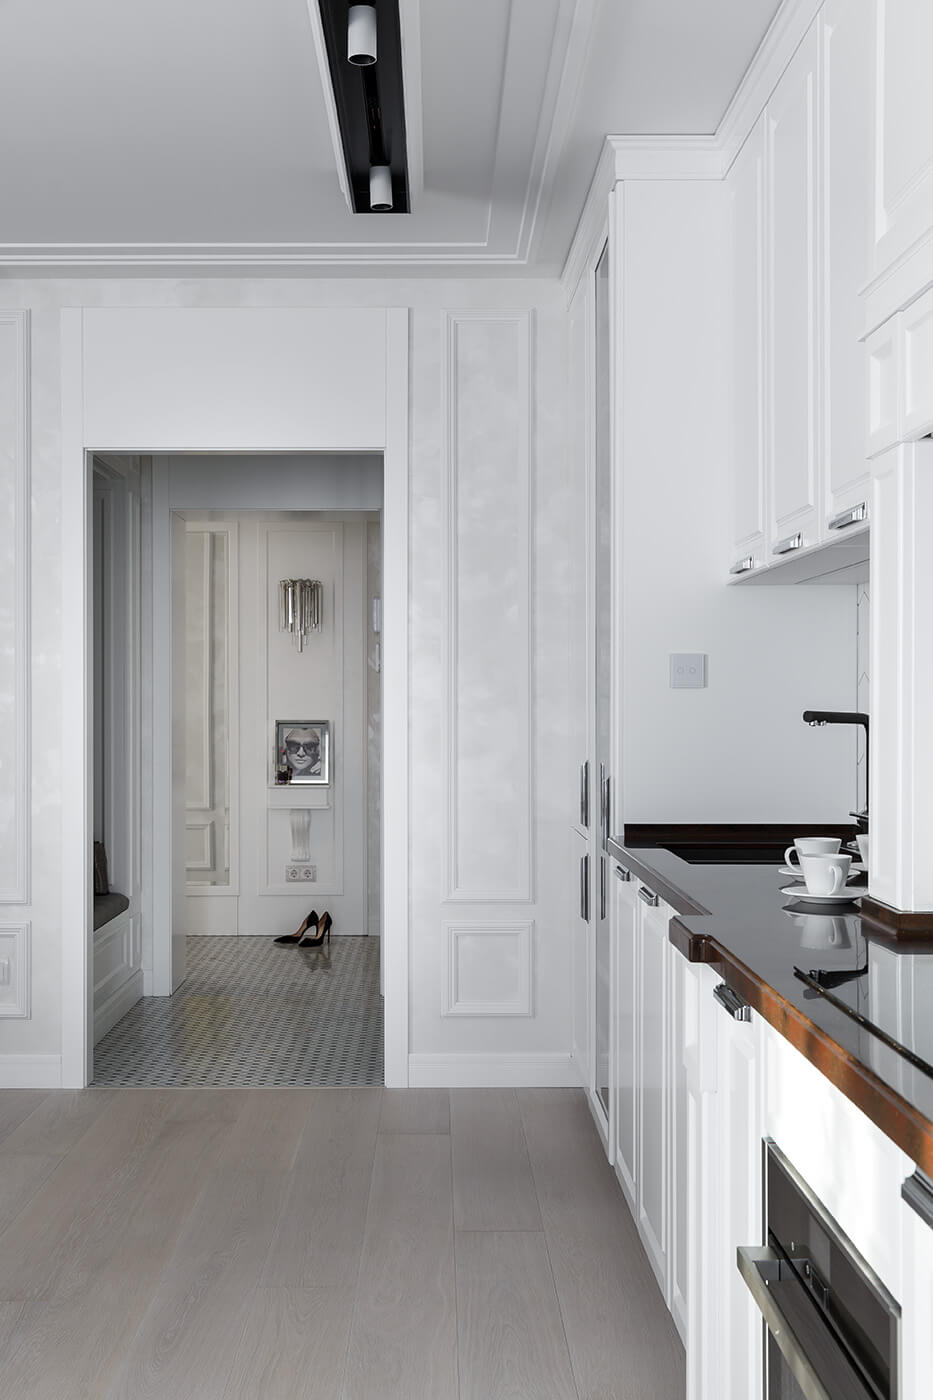 Отделка итальянской штукатуркой Oikos ottocento гармонирует с белым цветом кухонного гарнитура - проекты Setus Design